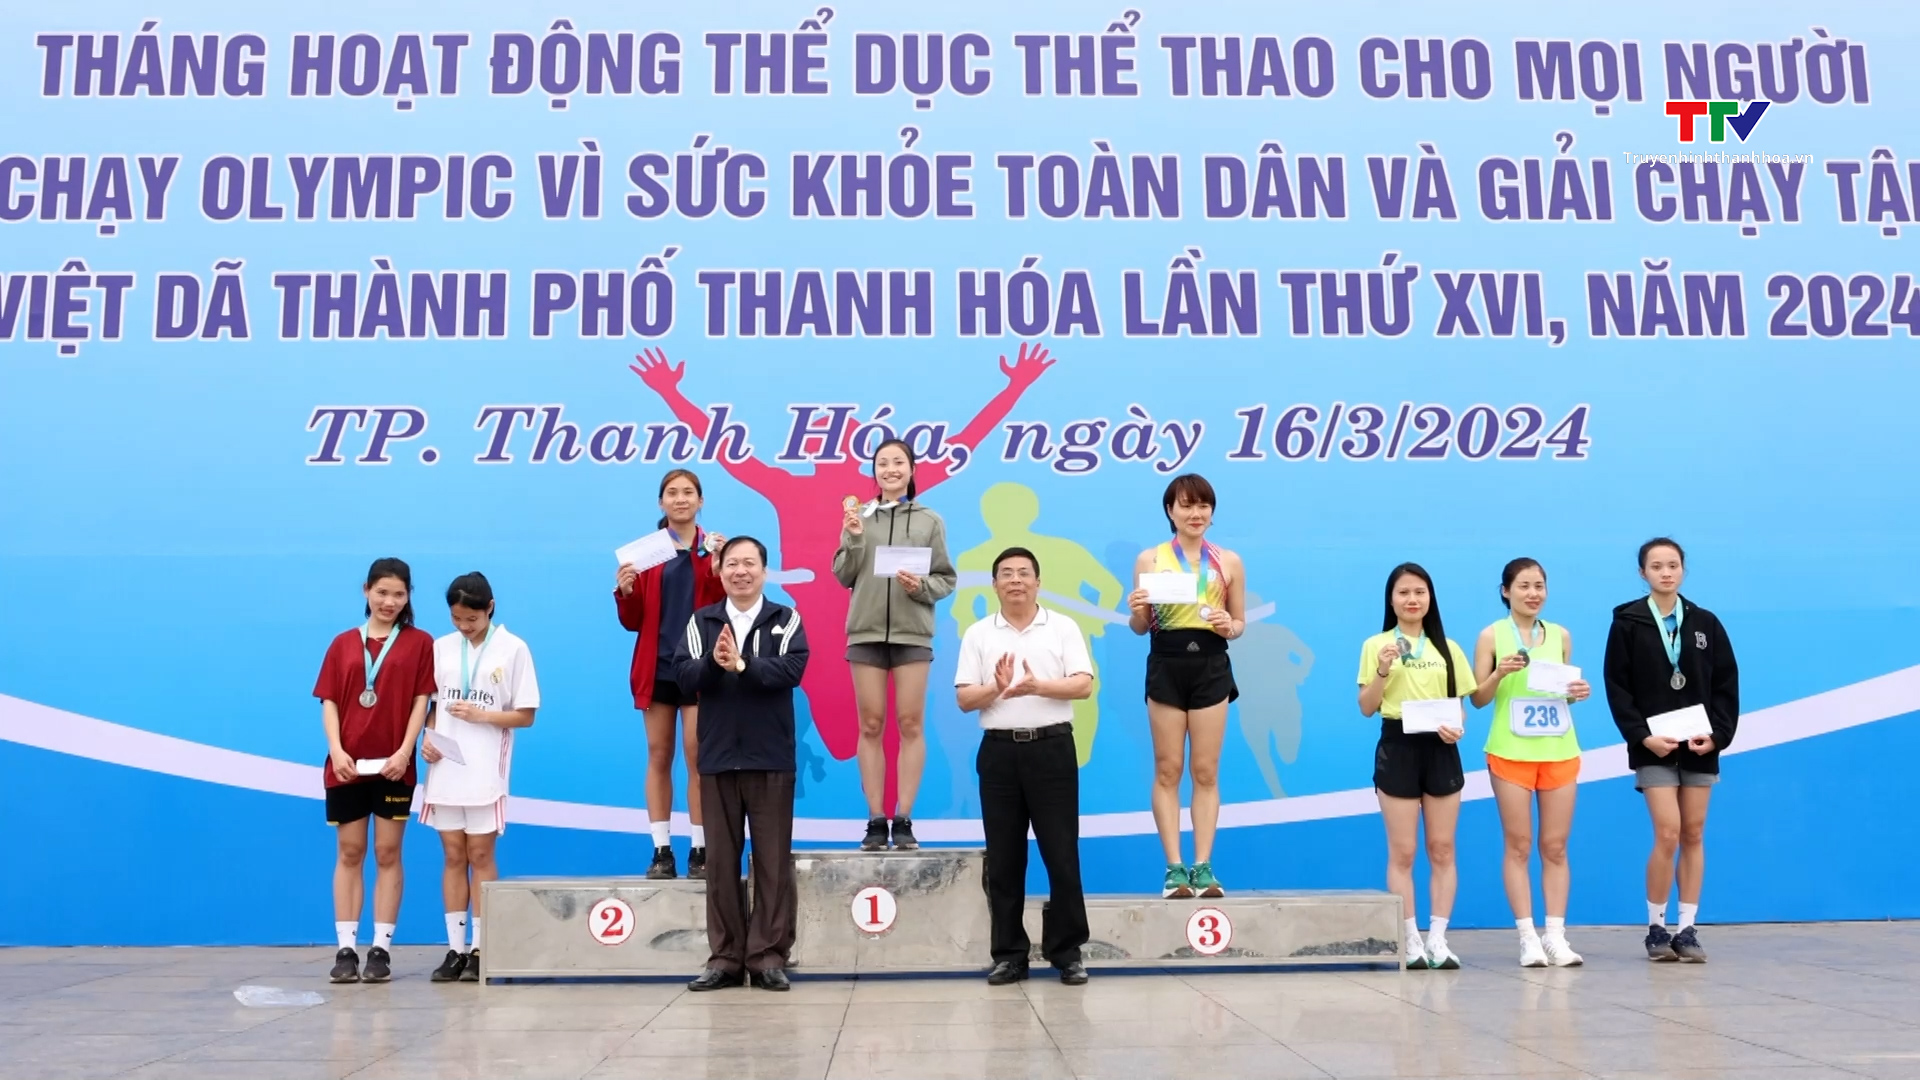 Thành phố Thanh Hóa tổ chức ngày chạy Olympic vì sức khỏe toàn dân và Giải chạy tập thể, việt dã 2024- Ảnh 3.